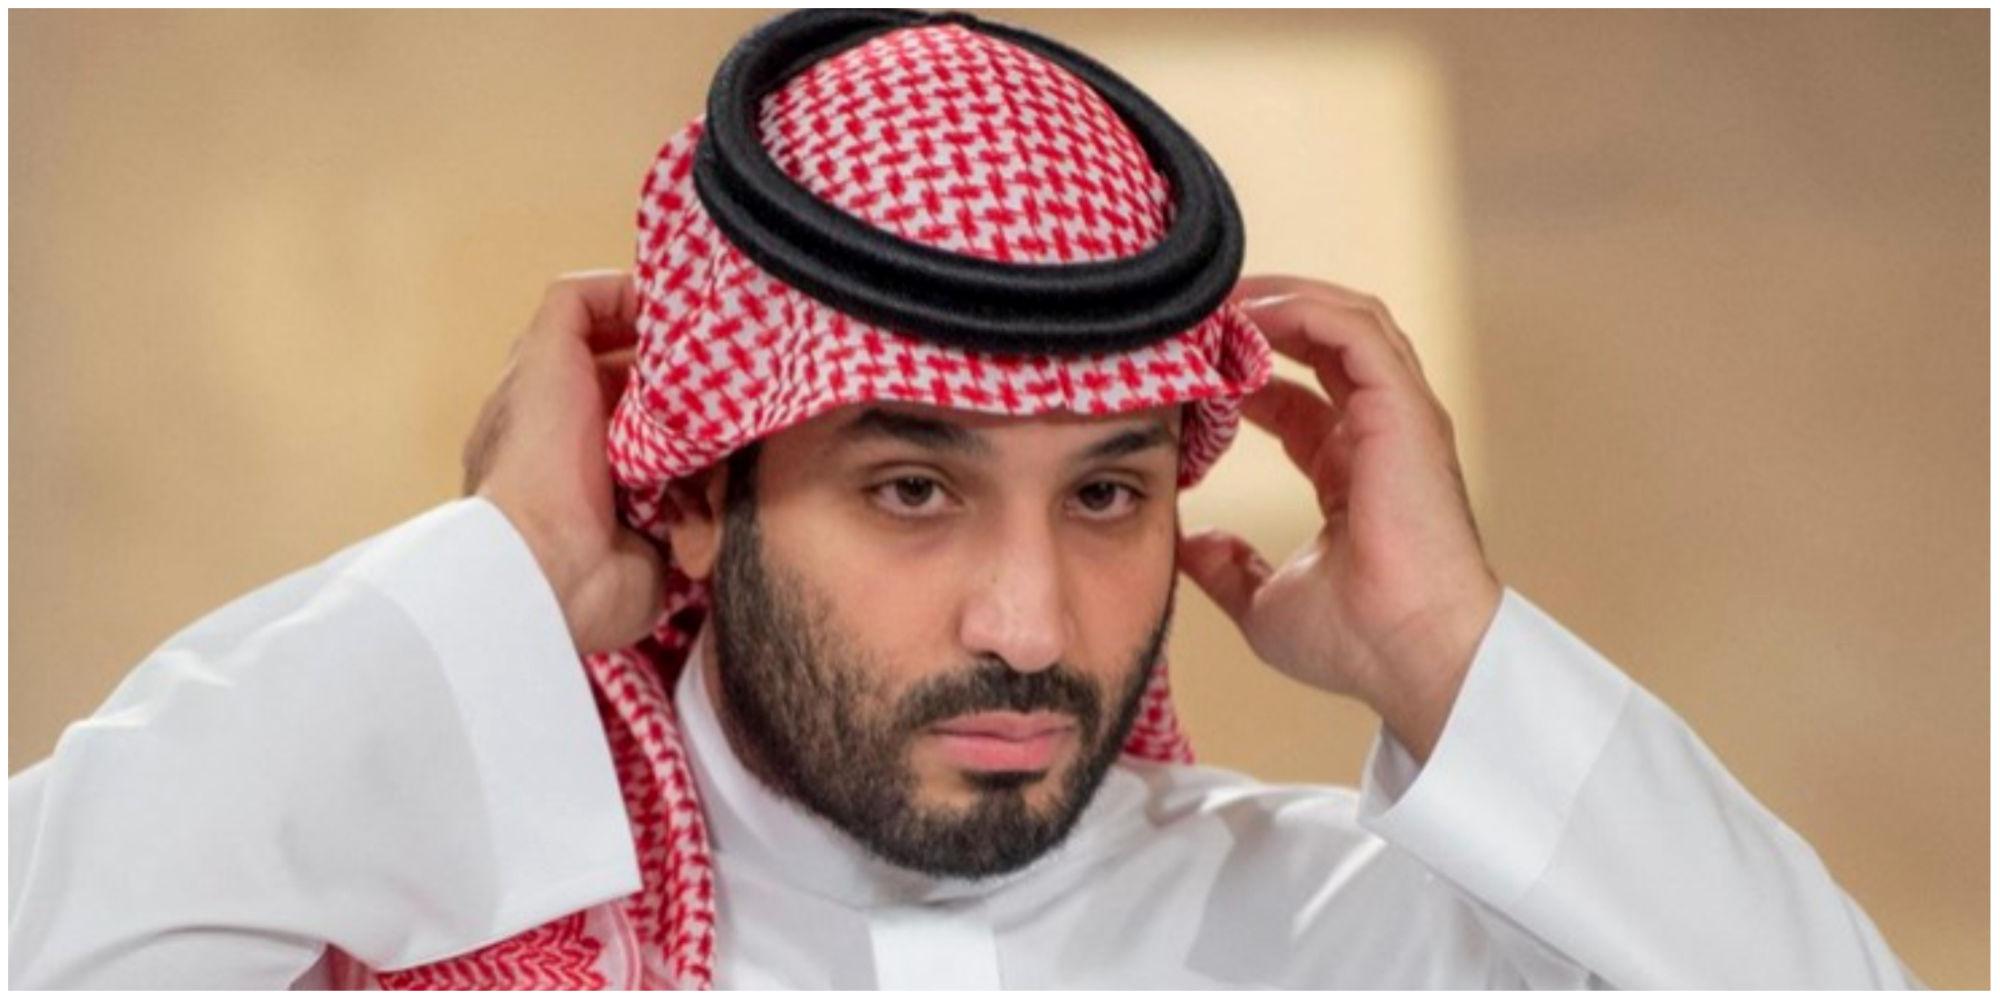 پوشش کاملا متفاوت ولیعهد عربستان در یک دیدار مهم + عکس